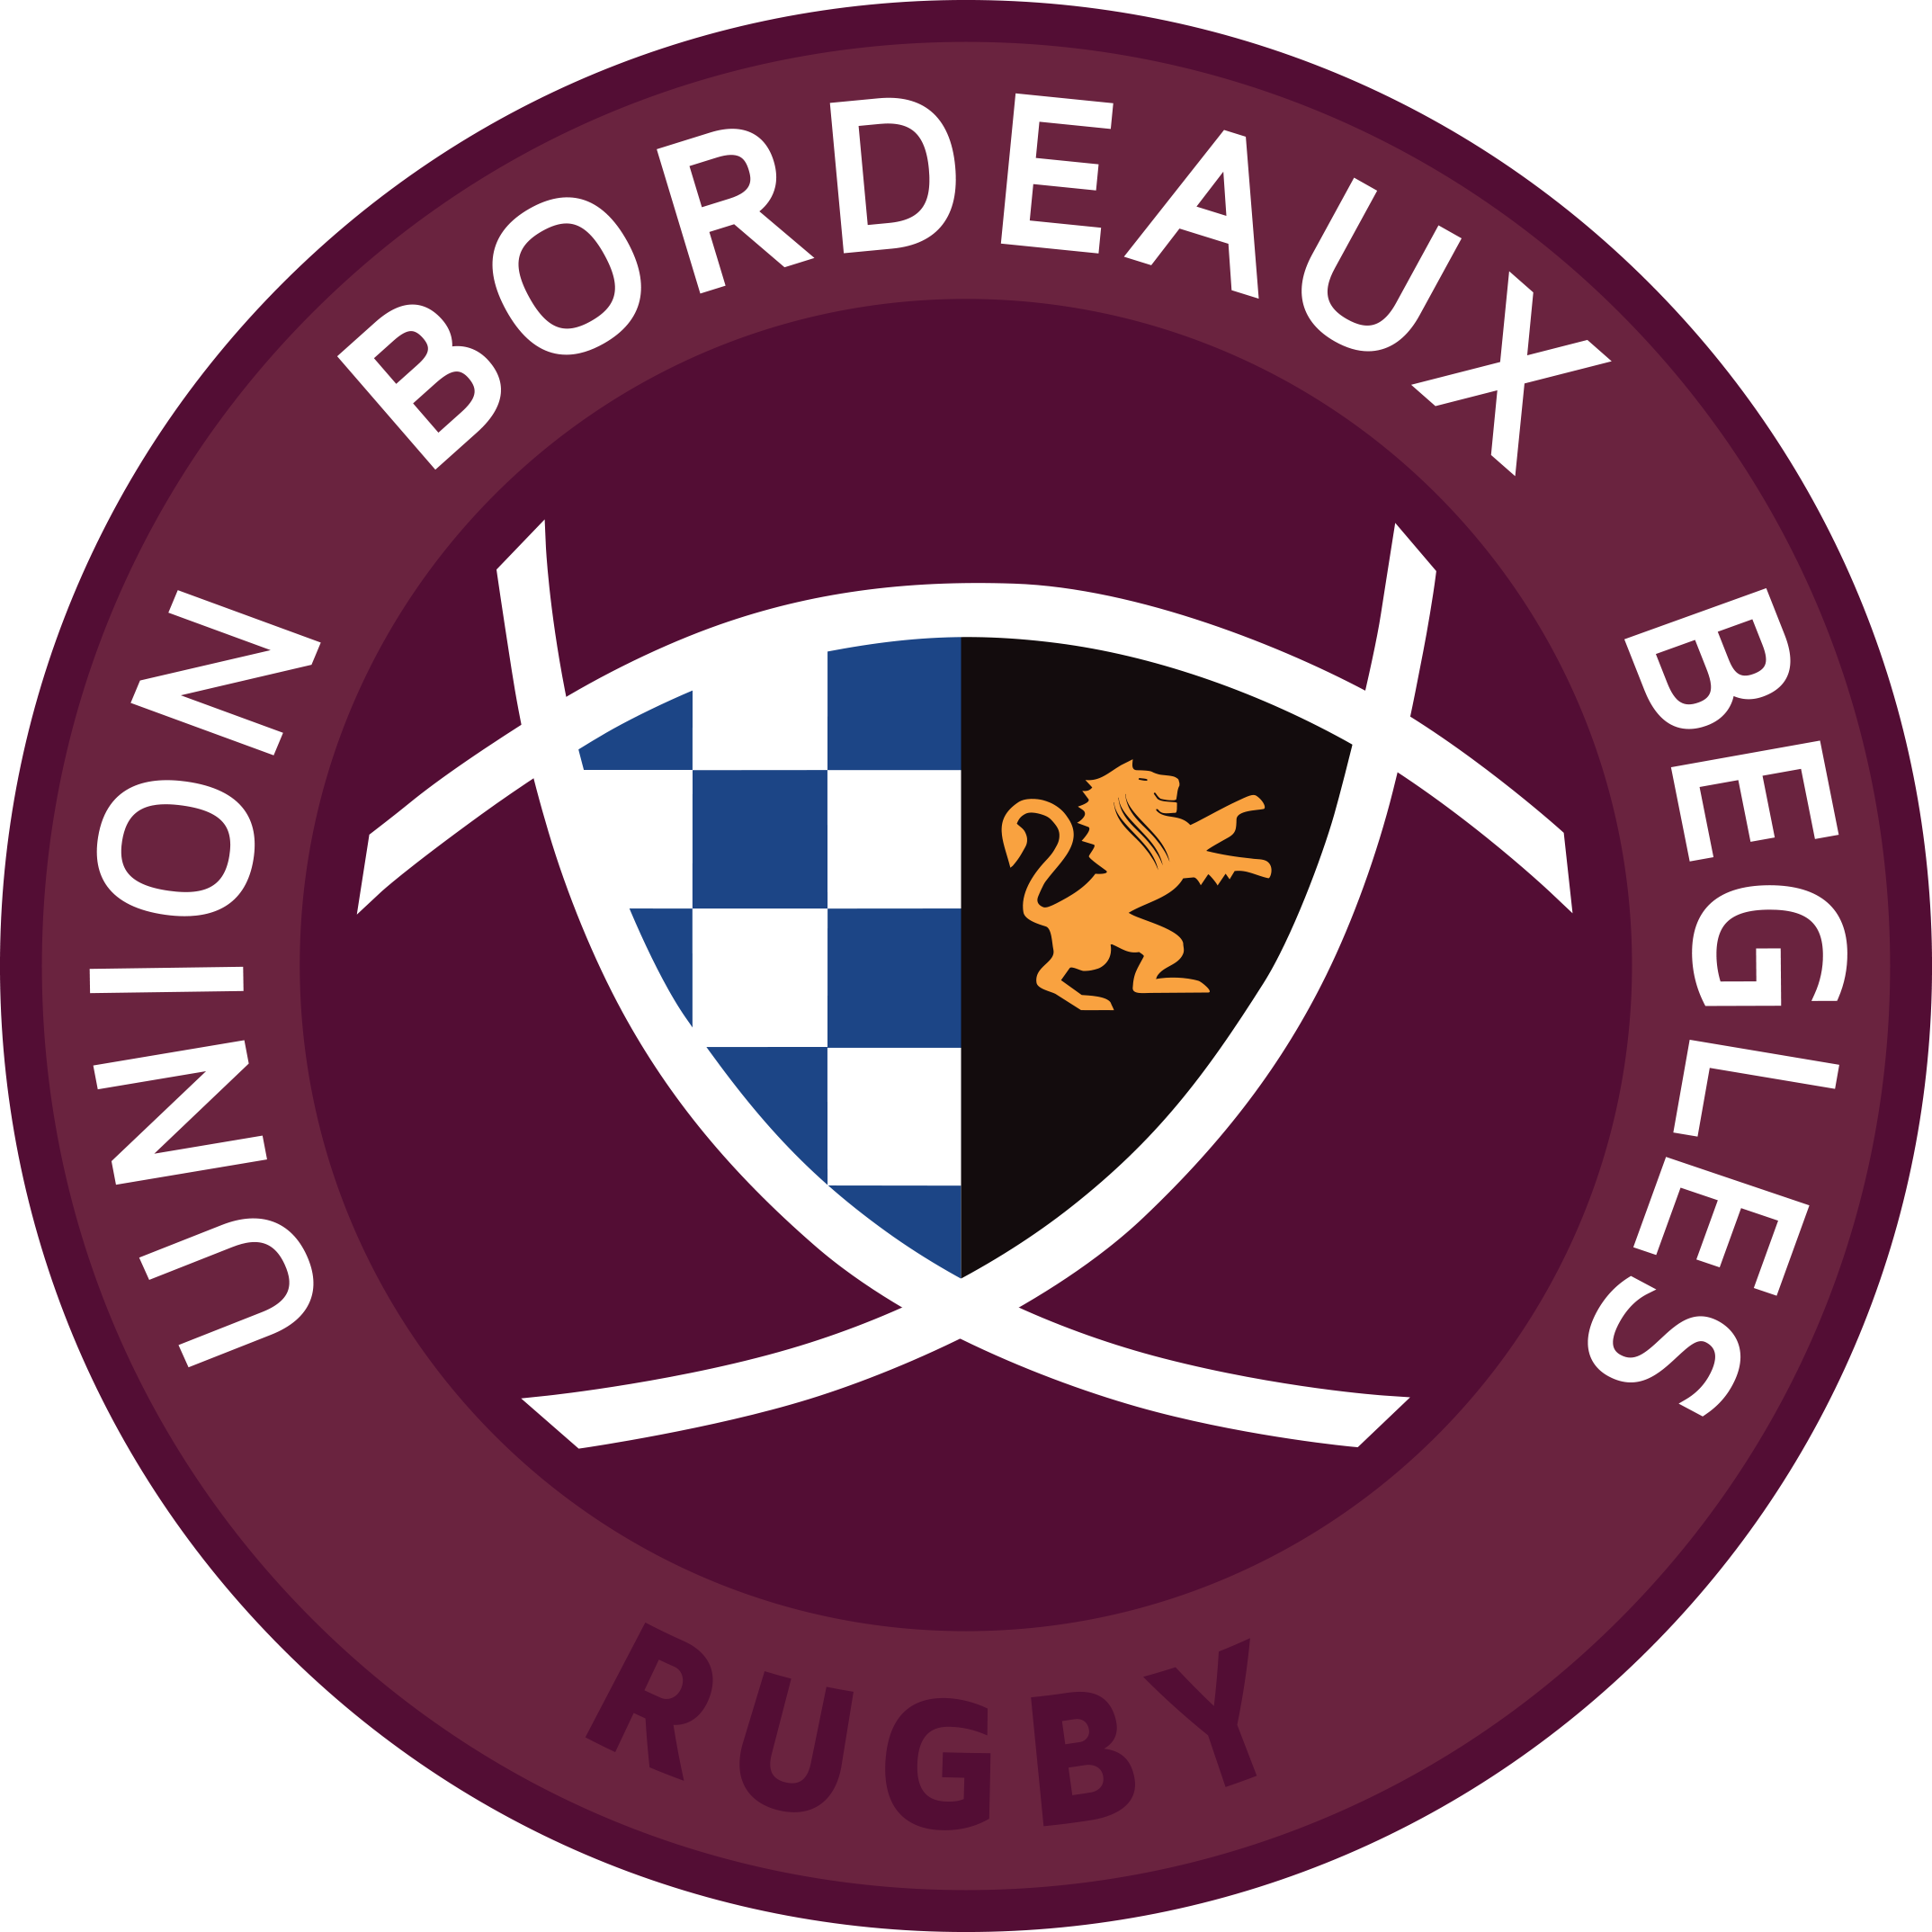 Union Bordeaux Begles